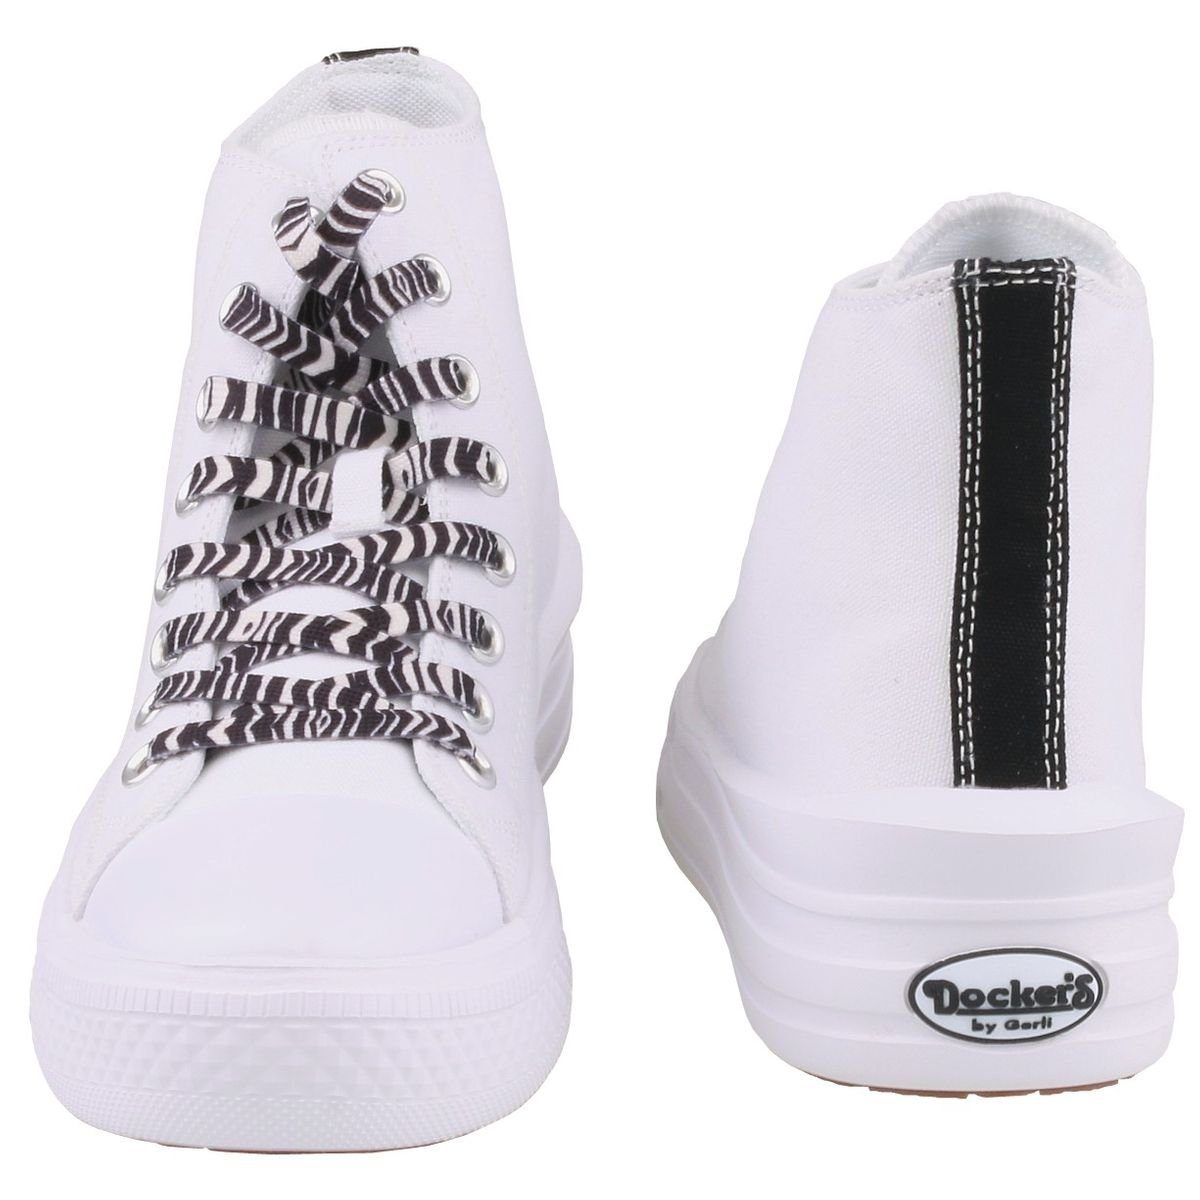 Gerli by 50VL202-710500 Sneaker Dockers